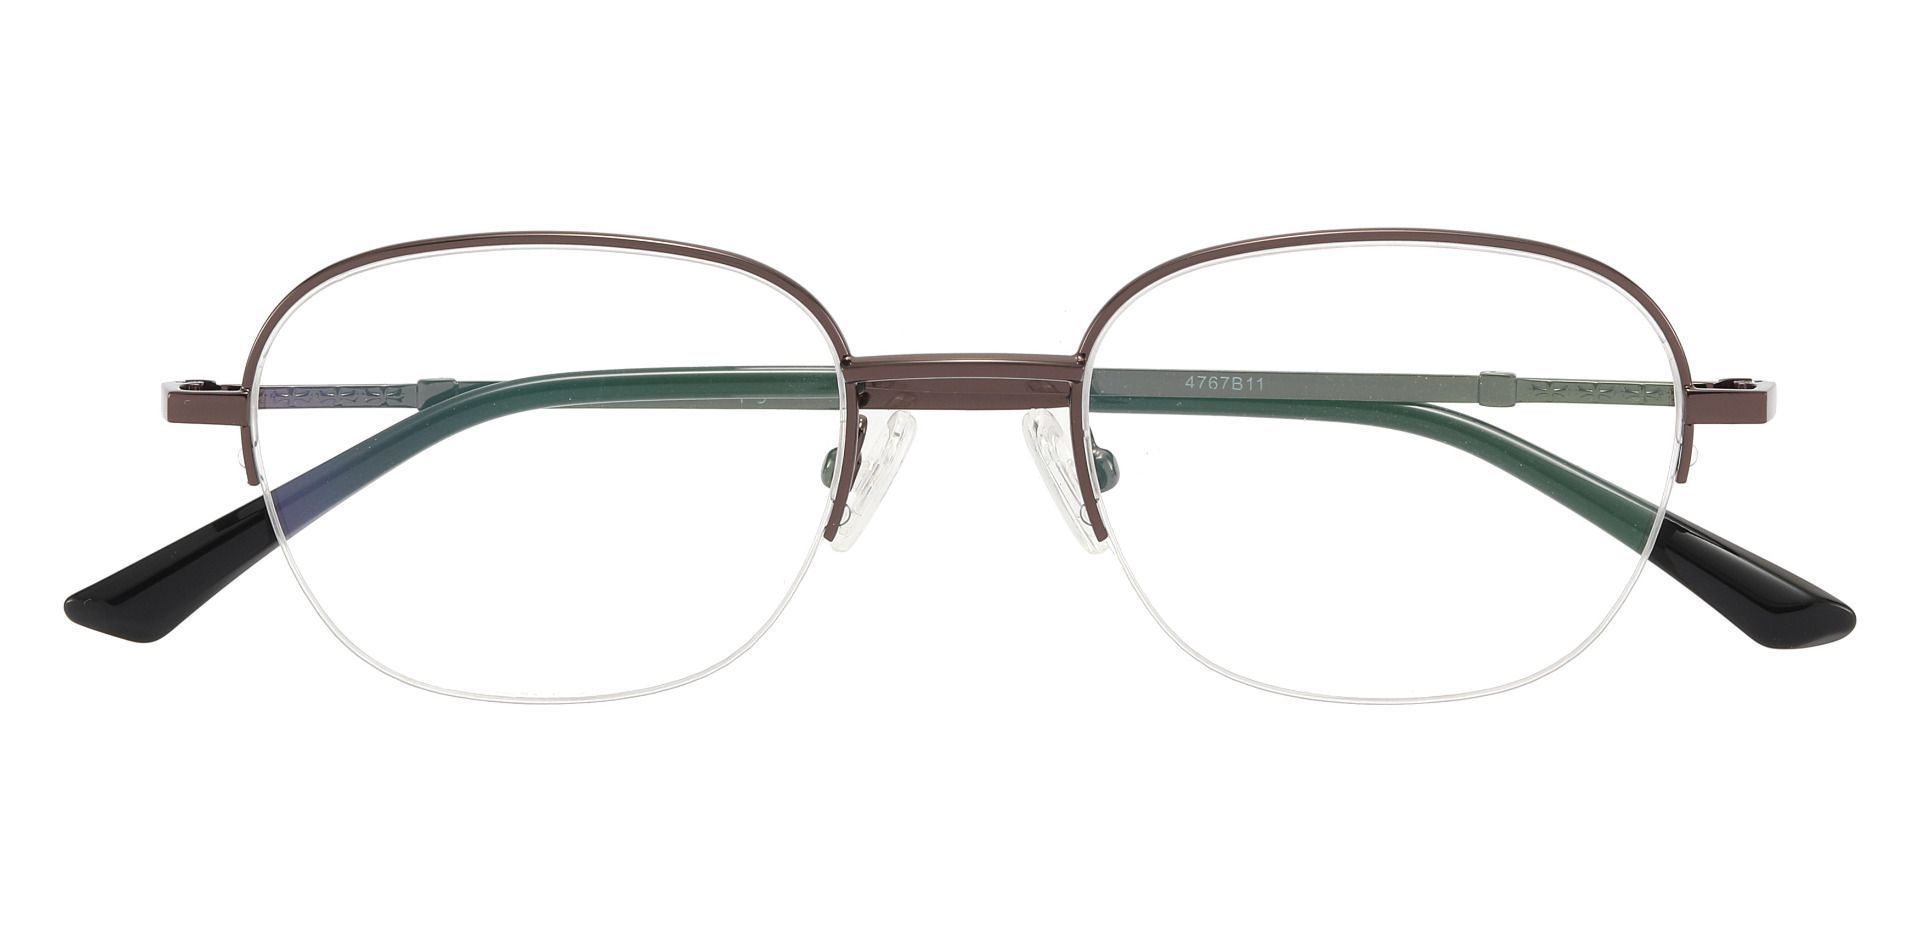 Rochester Oval Non-Rx Glasses - Brown